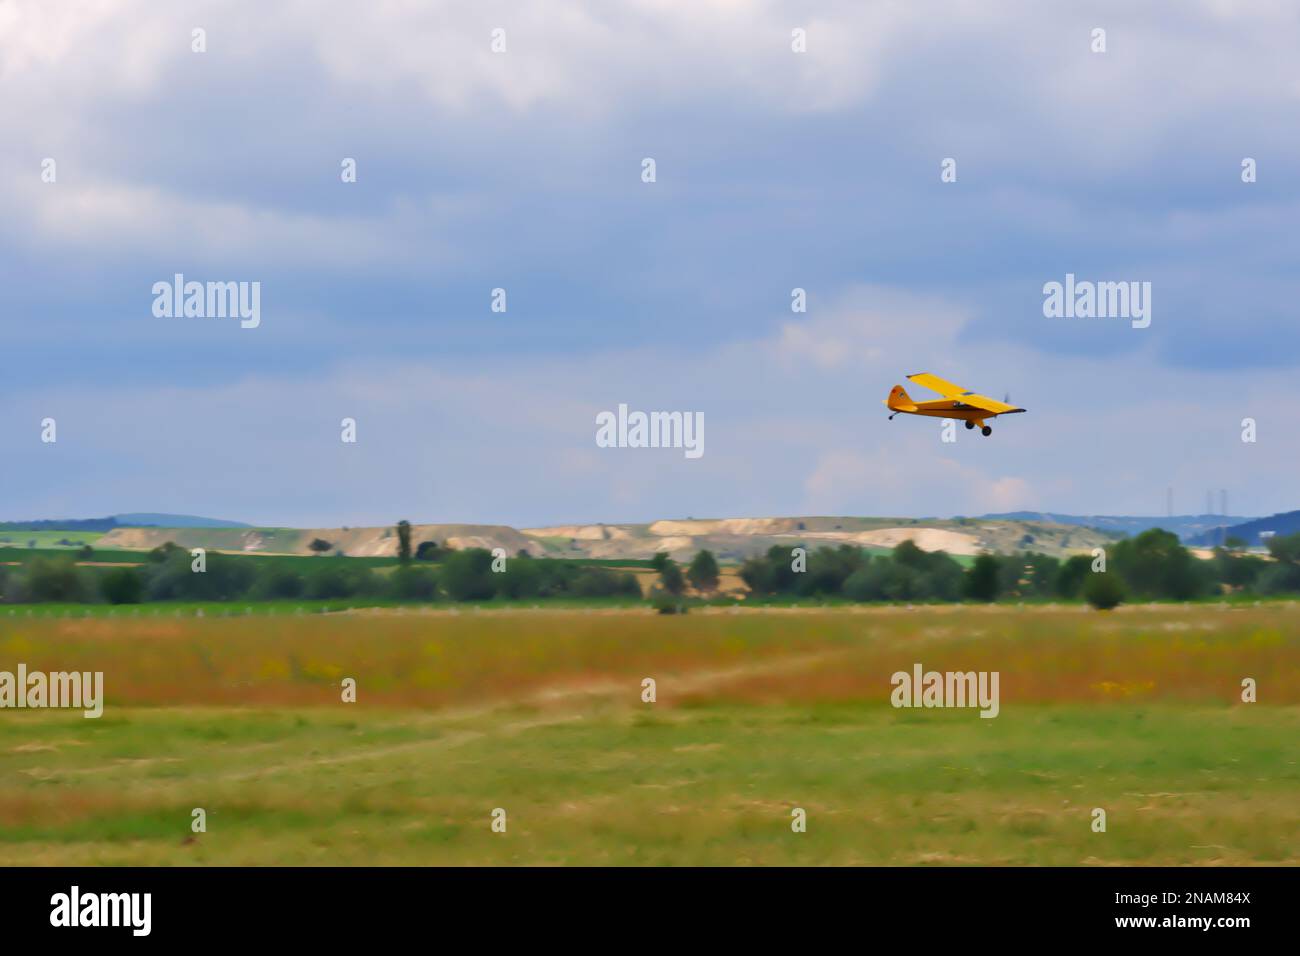 Gelbes einmotoriges Flugzeug manövriert nahe am Boden mit bewölktem Himmel im Hintergrund Stockfoto